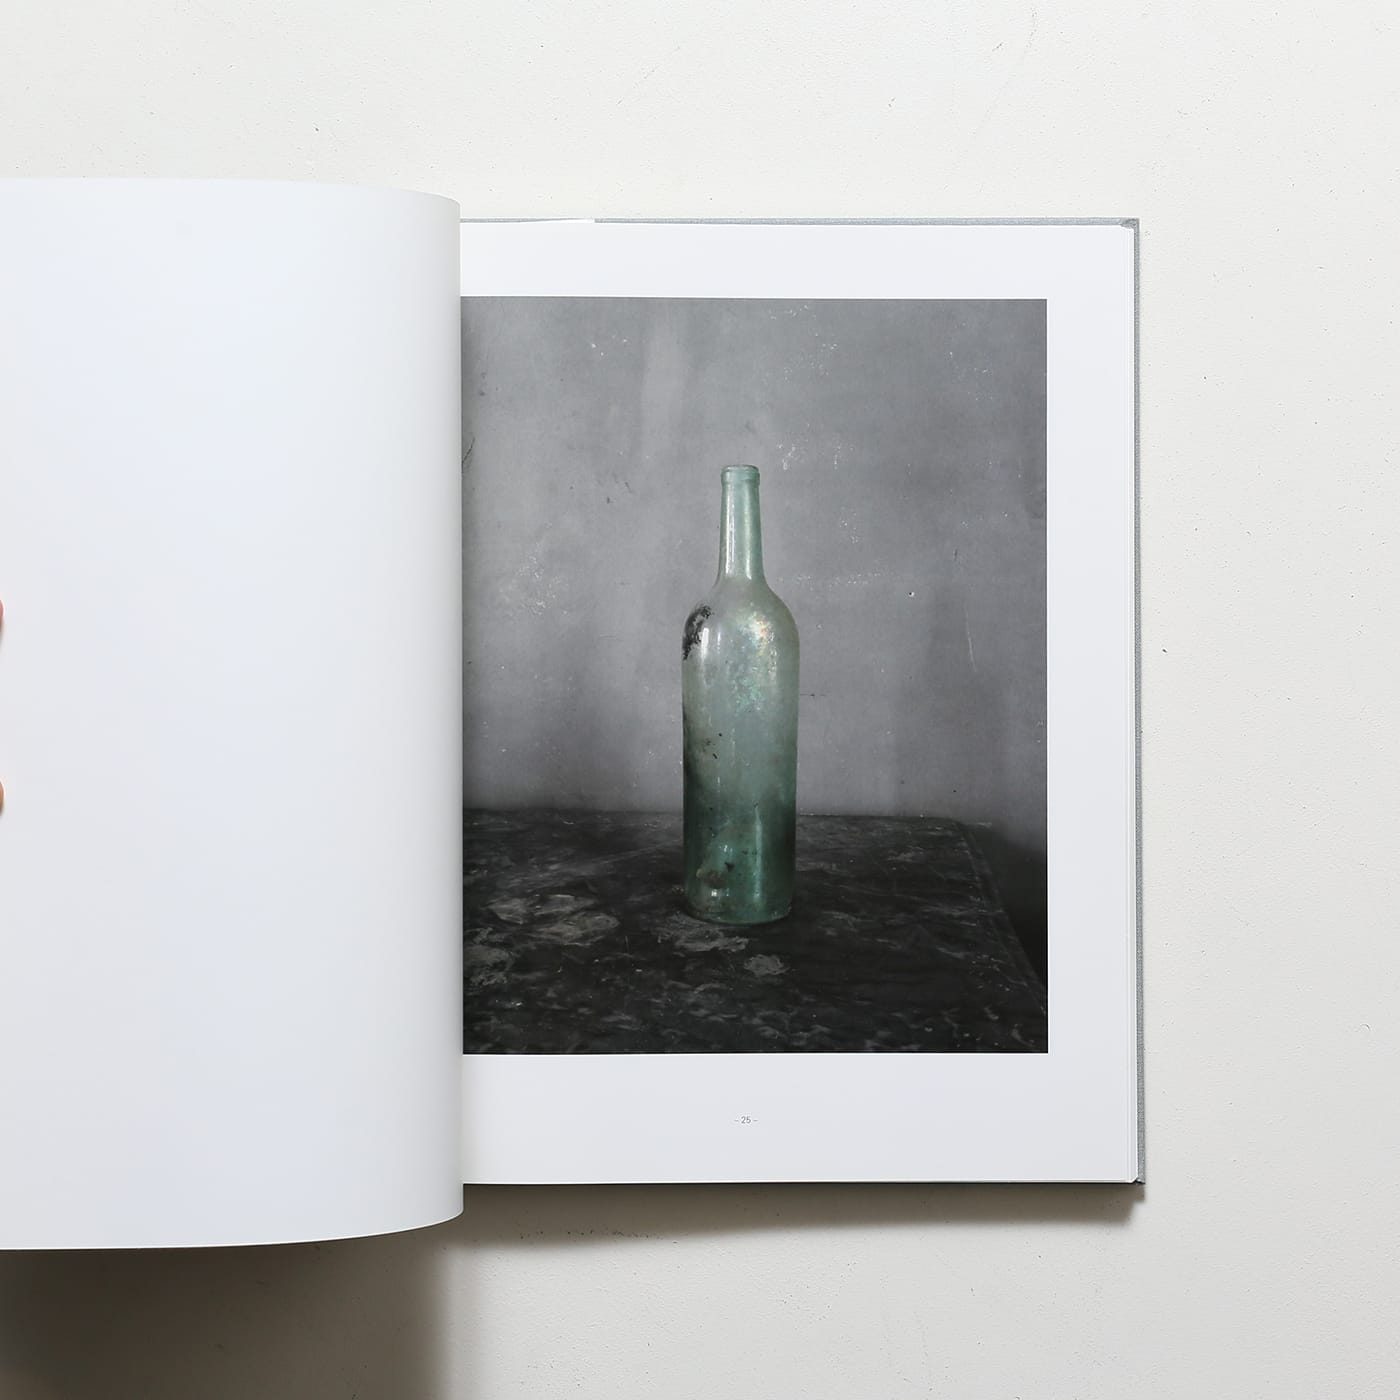 Joel Meyerowitz: Cezanne’s Objects